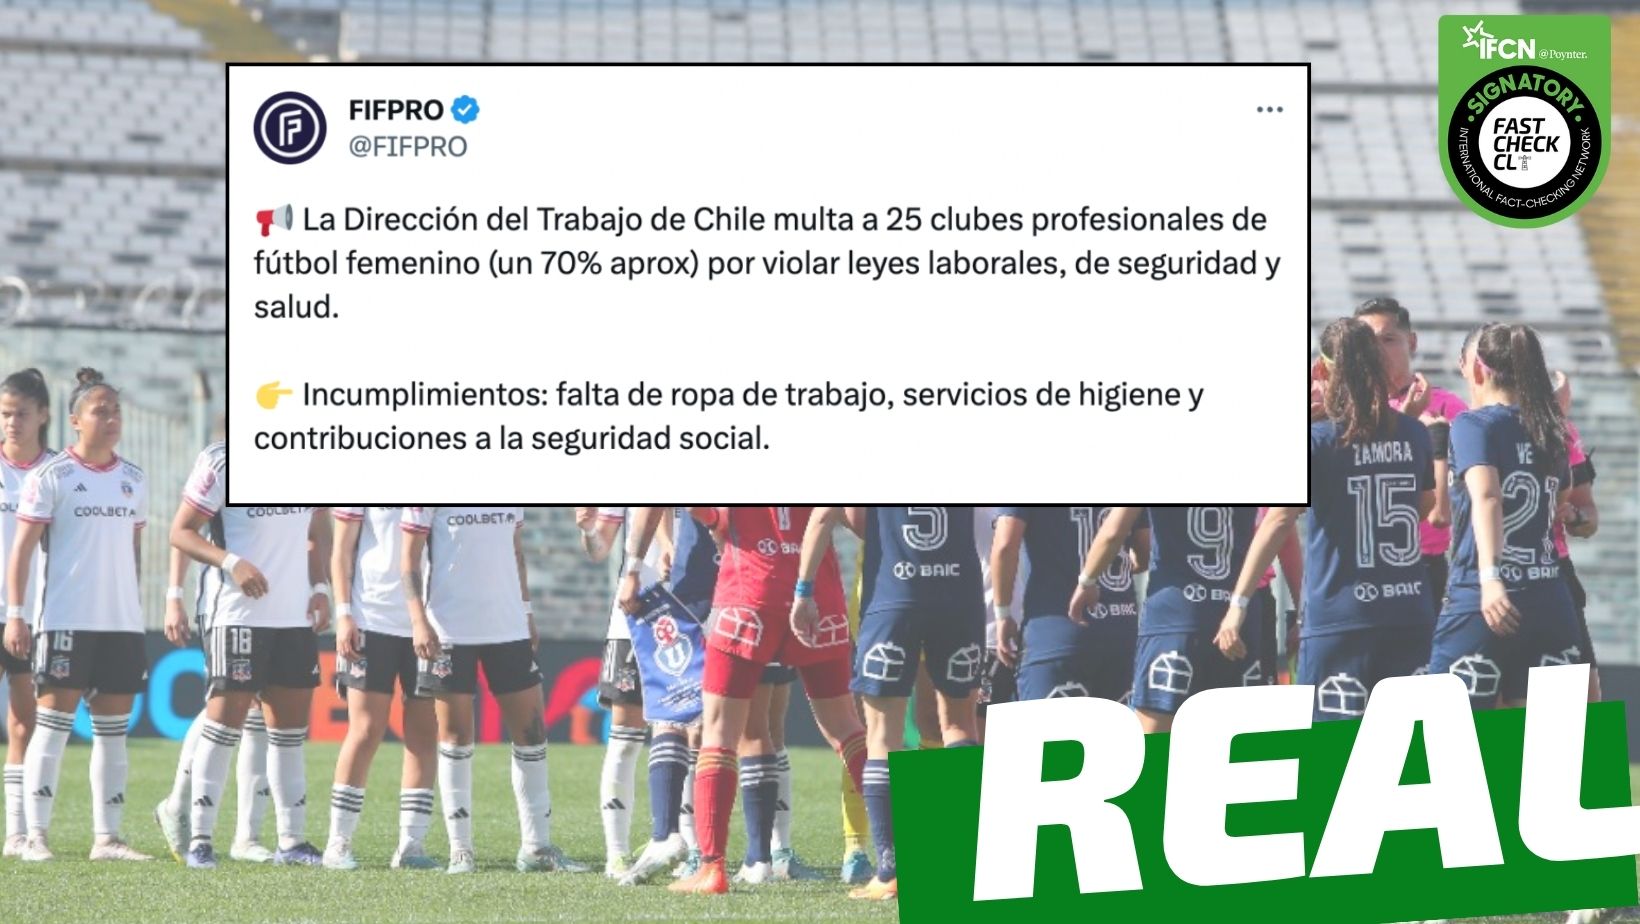 You are currently viewing “La Direcci贸n del Trabajo de Chile multa a 25 clubes profesionales de f煤tbol femenino por violar leyes laborales, de seguridad y salud”: #Real